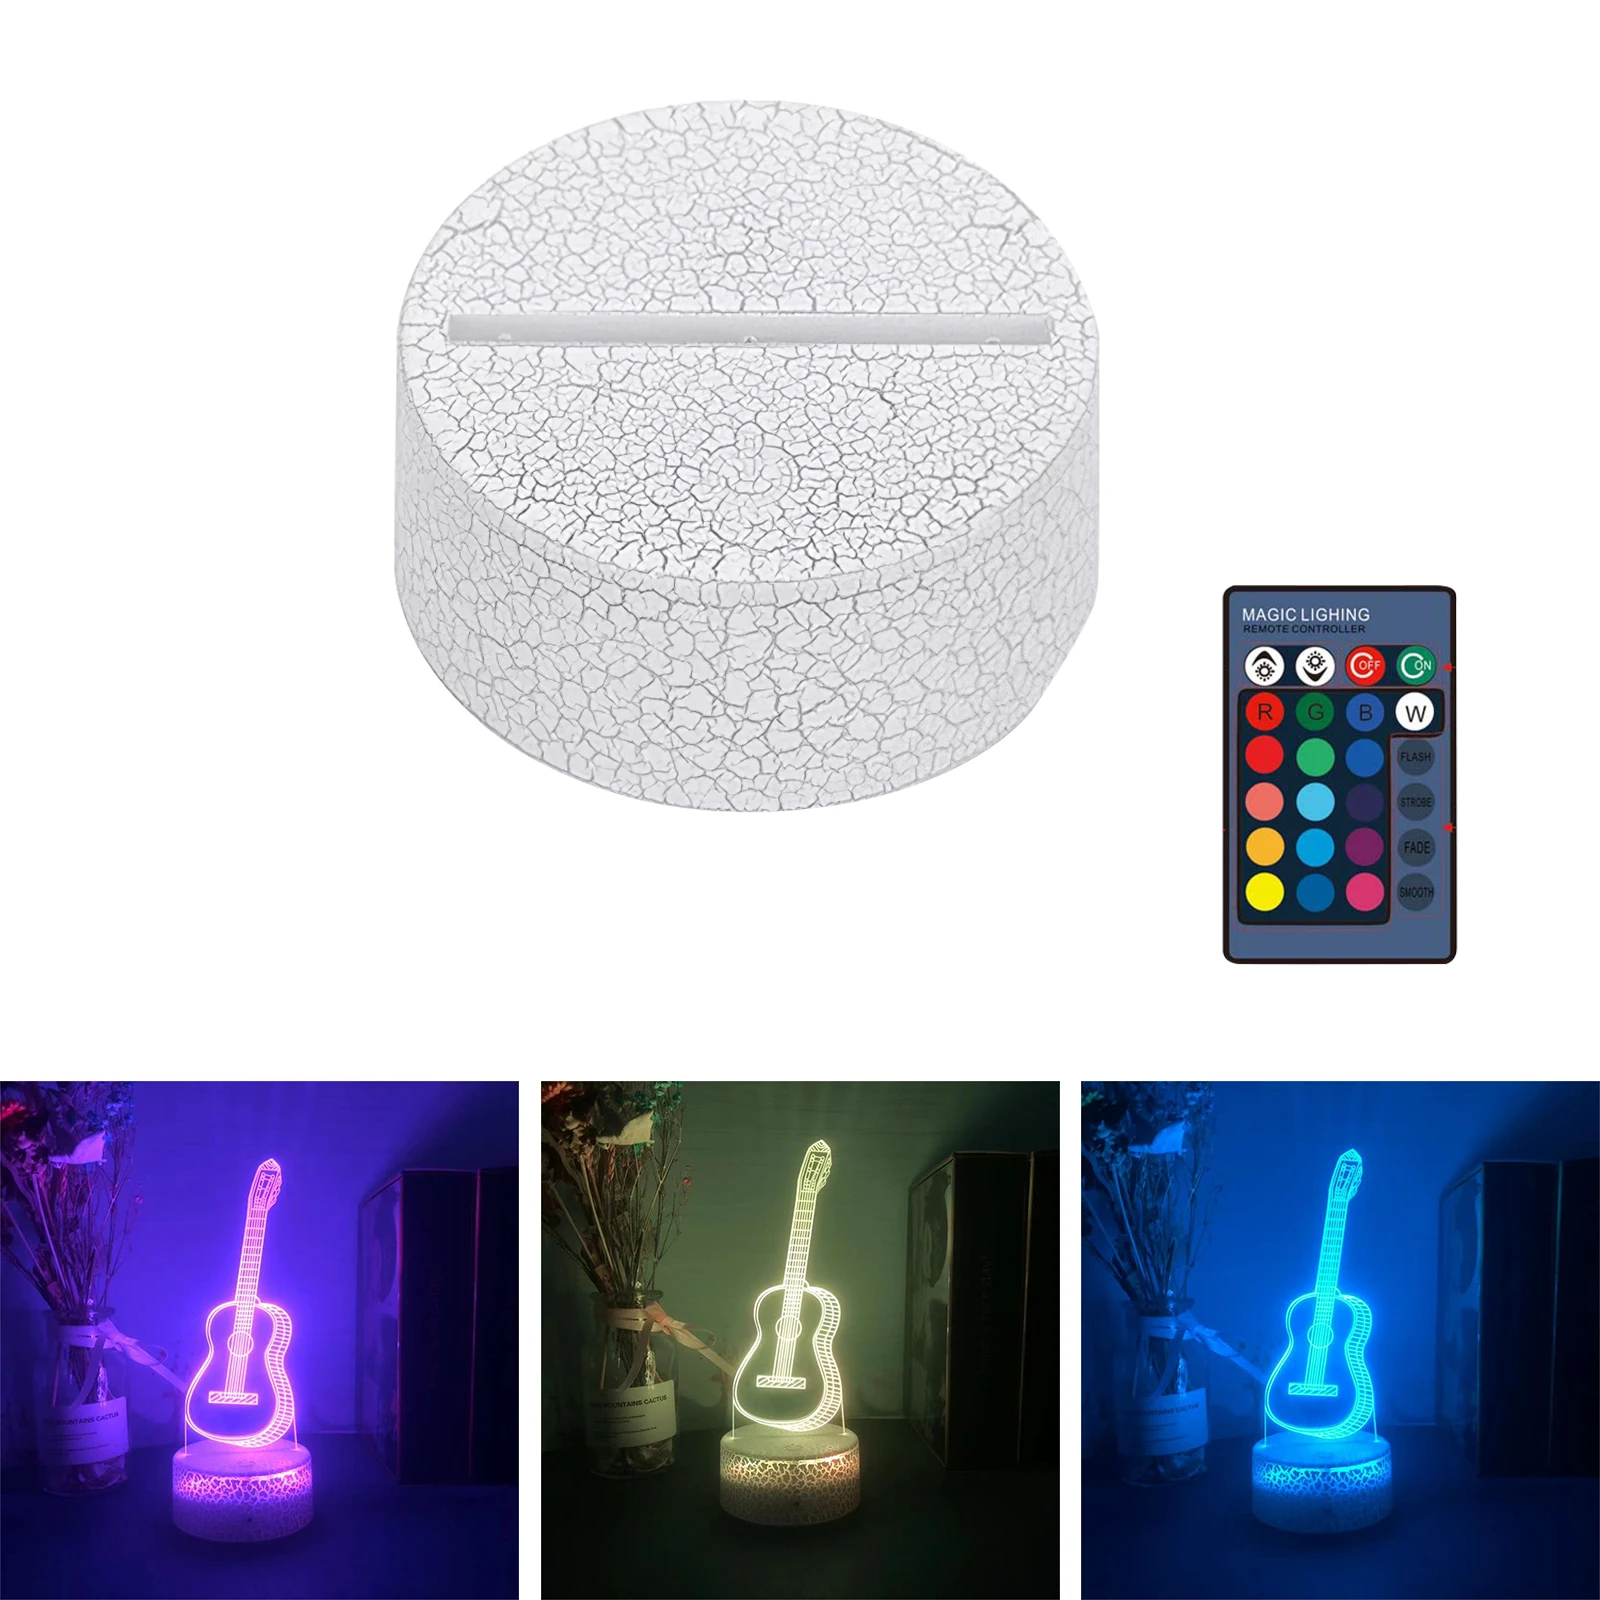 

Konesky 3D гитара светодиодный Ночной светильник с дистанционным управлением USB Ночная лампа 7 цветов акриловый 3D эффект настольная лампа для сп...